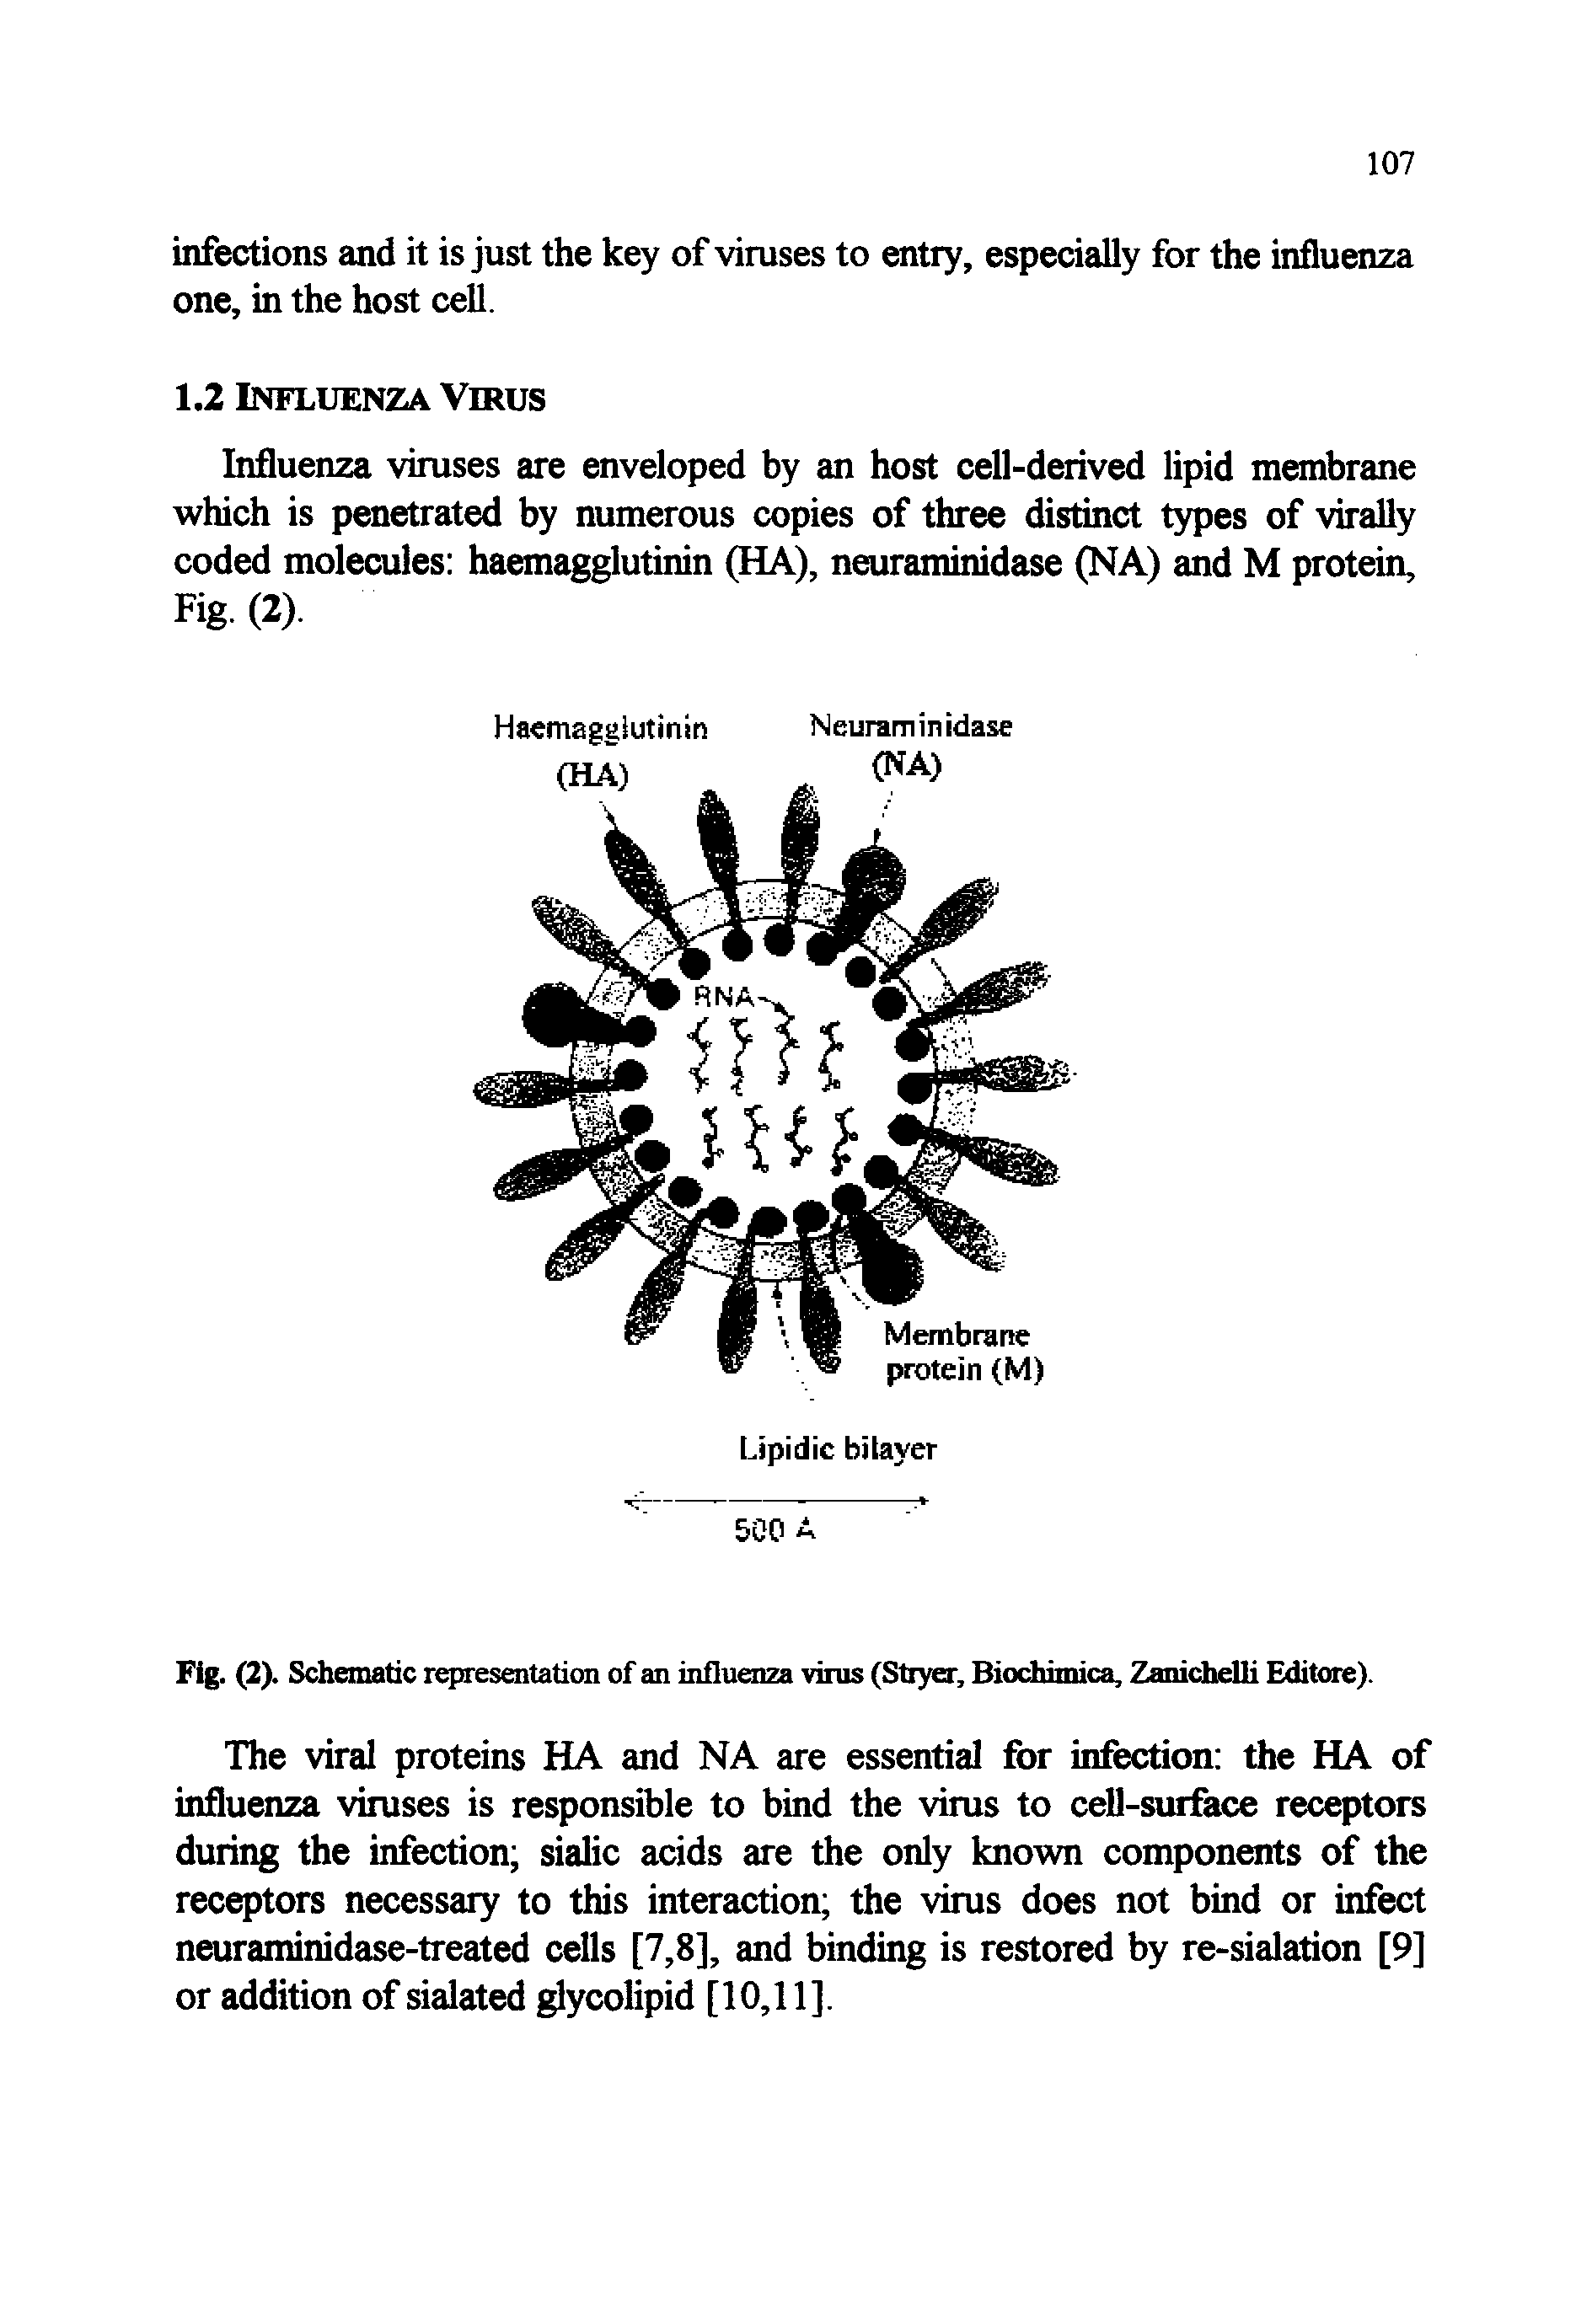 Fig. (2). Schematic representation of an influenza virus (Stryer, Biochimica, Zanichelli Editore).